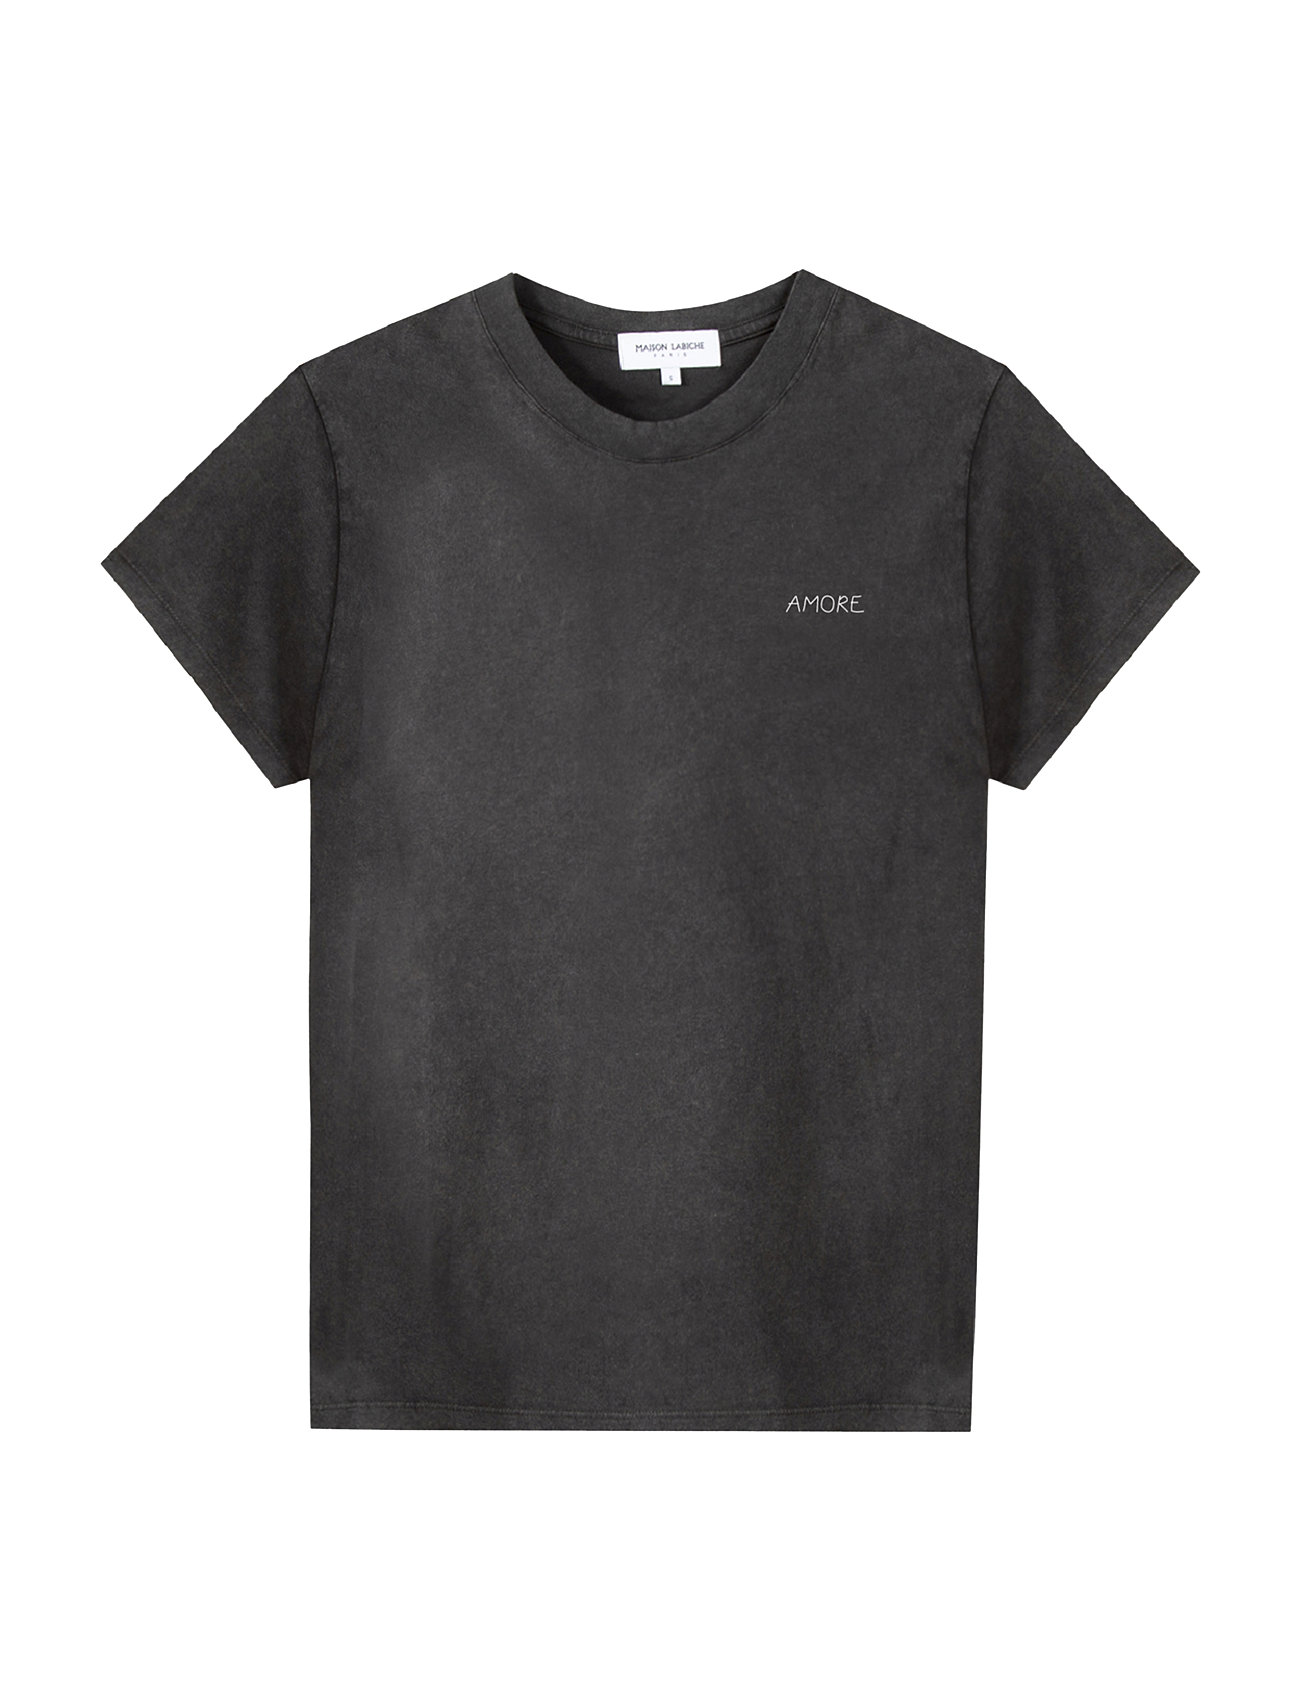 Popincourt Amore /Gots Designers T-shirts Short-sleeved Black Maison Labiche Paris